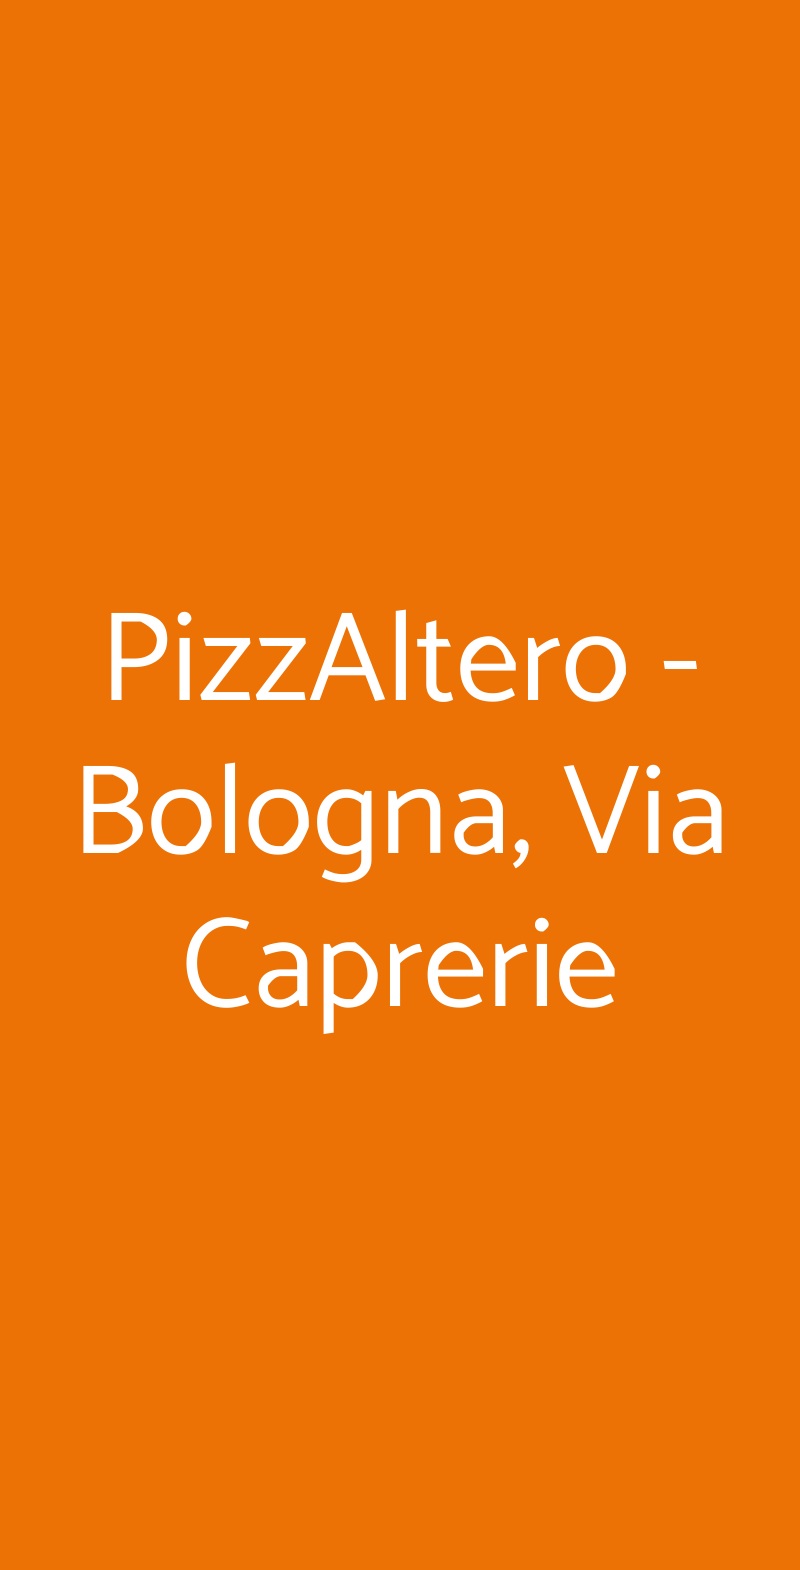 PizzAltero - Bologna, Via Caprerie Bologna menù 1 pagina